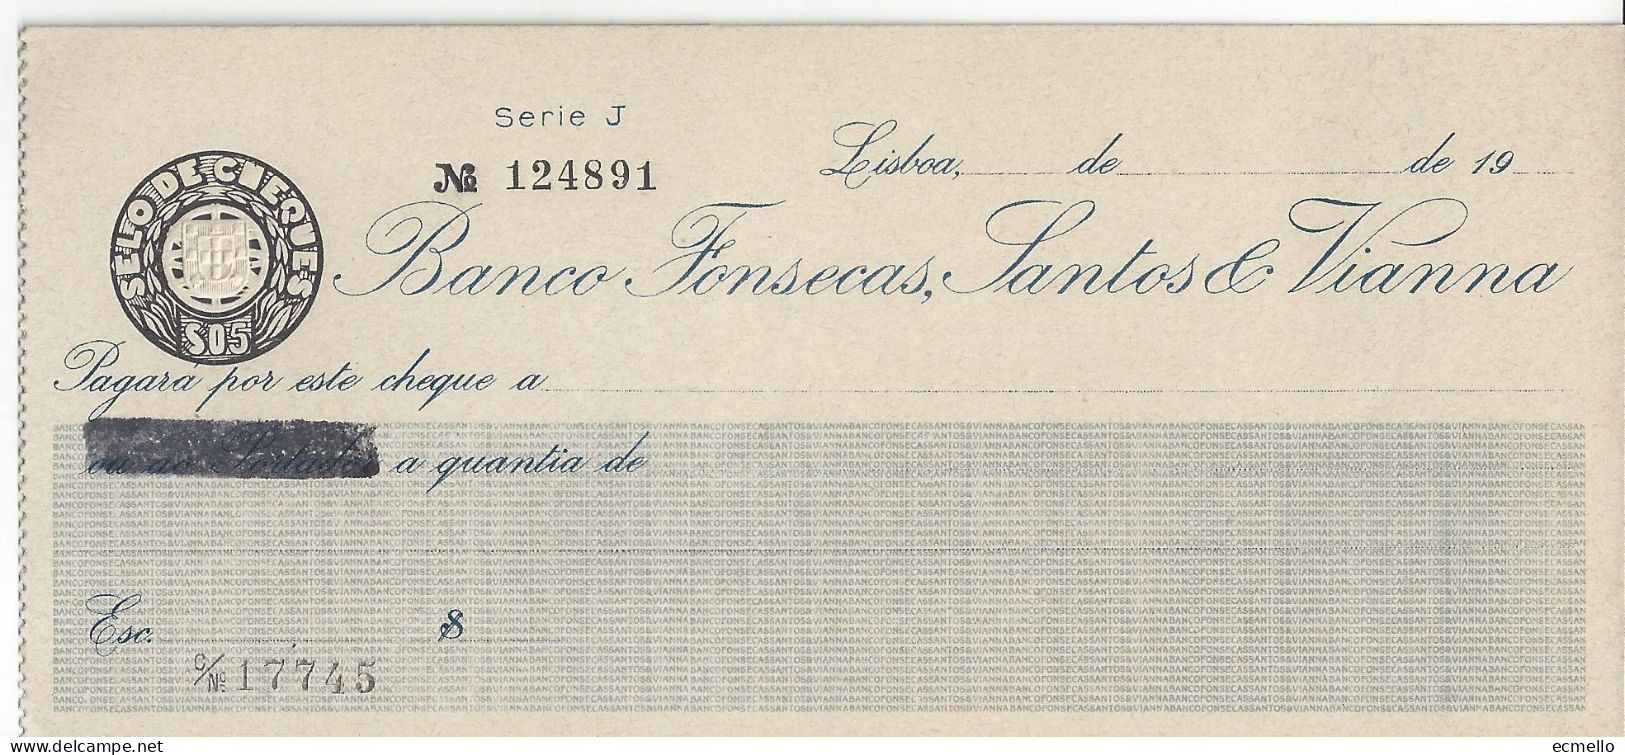 PORTUGAL CHEQUE CHECK BANCO FONSECAS, SANTOS & VIANNA, 1950'S. - Assegni & Assegni Di Viaggio